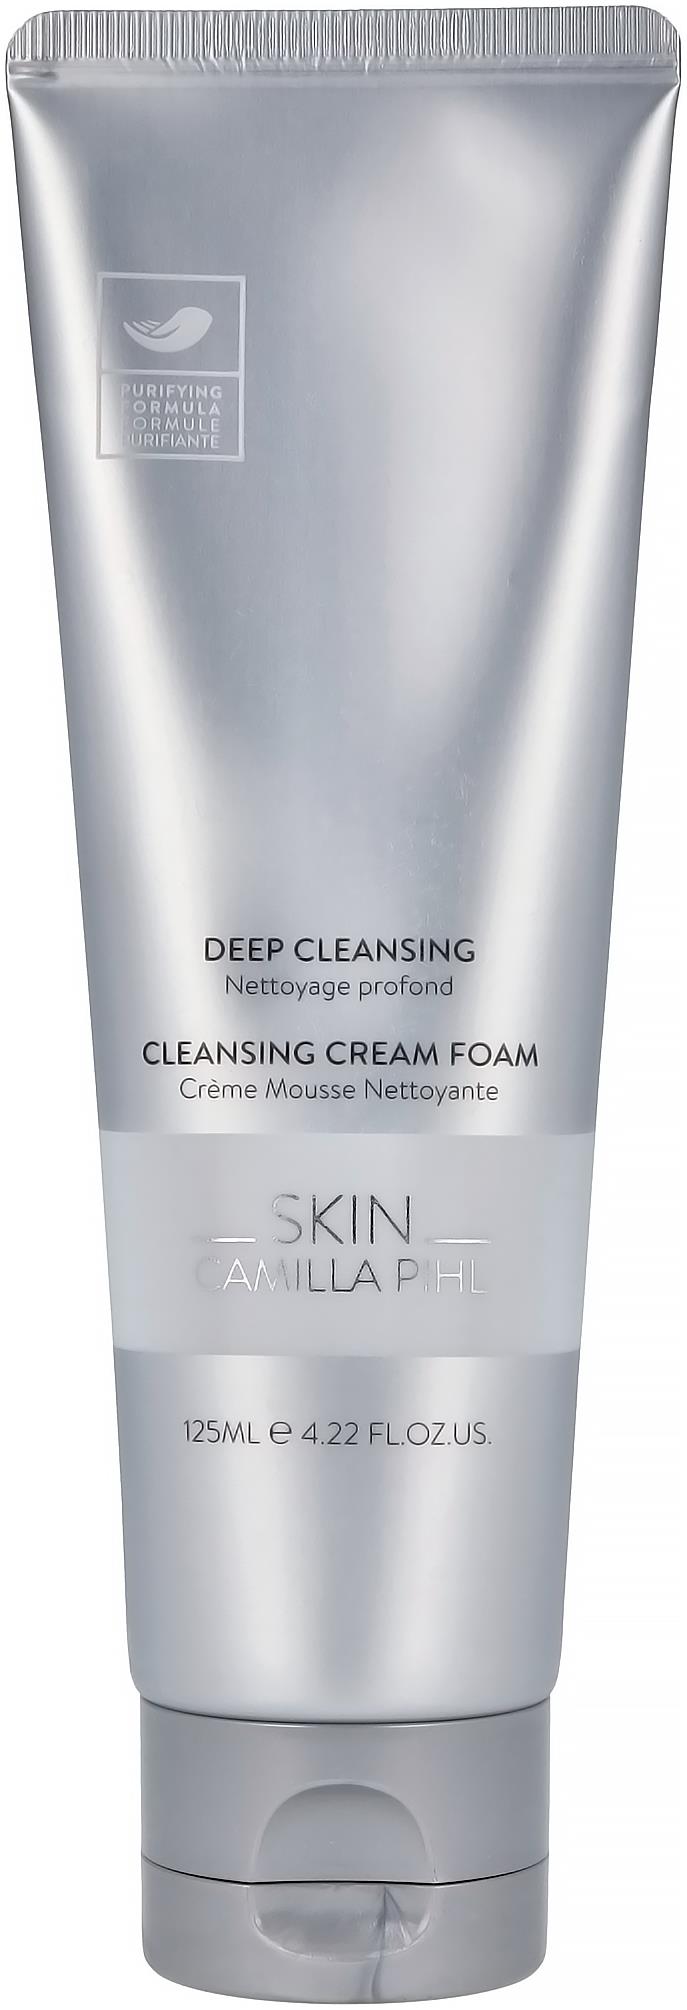 Camilla Pihl Cosmetics Skin Cleansing Cream Foam 125 ml